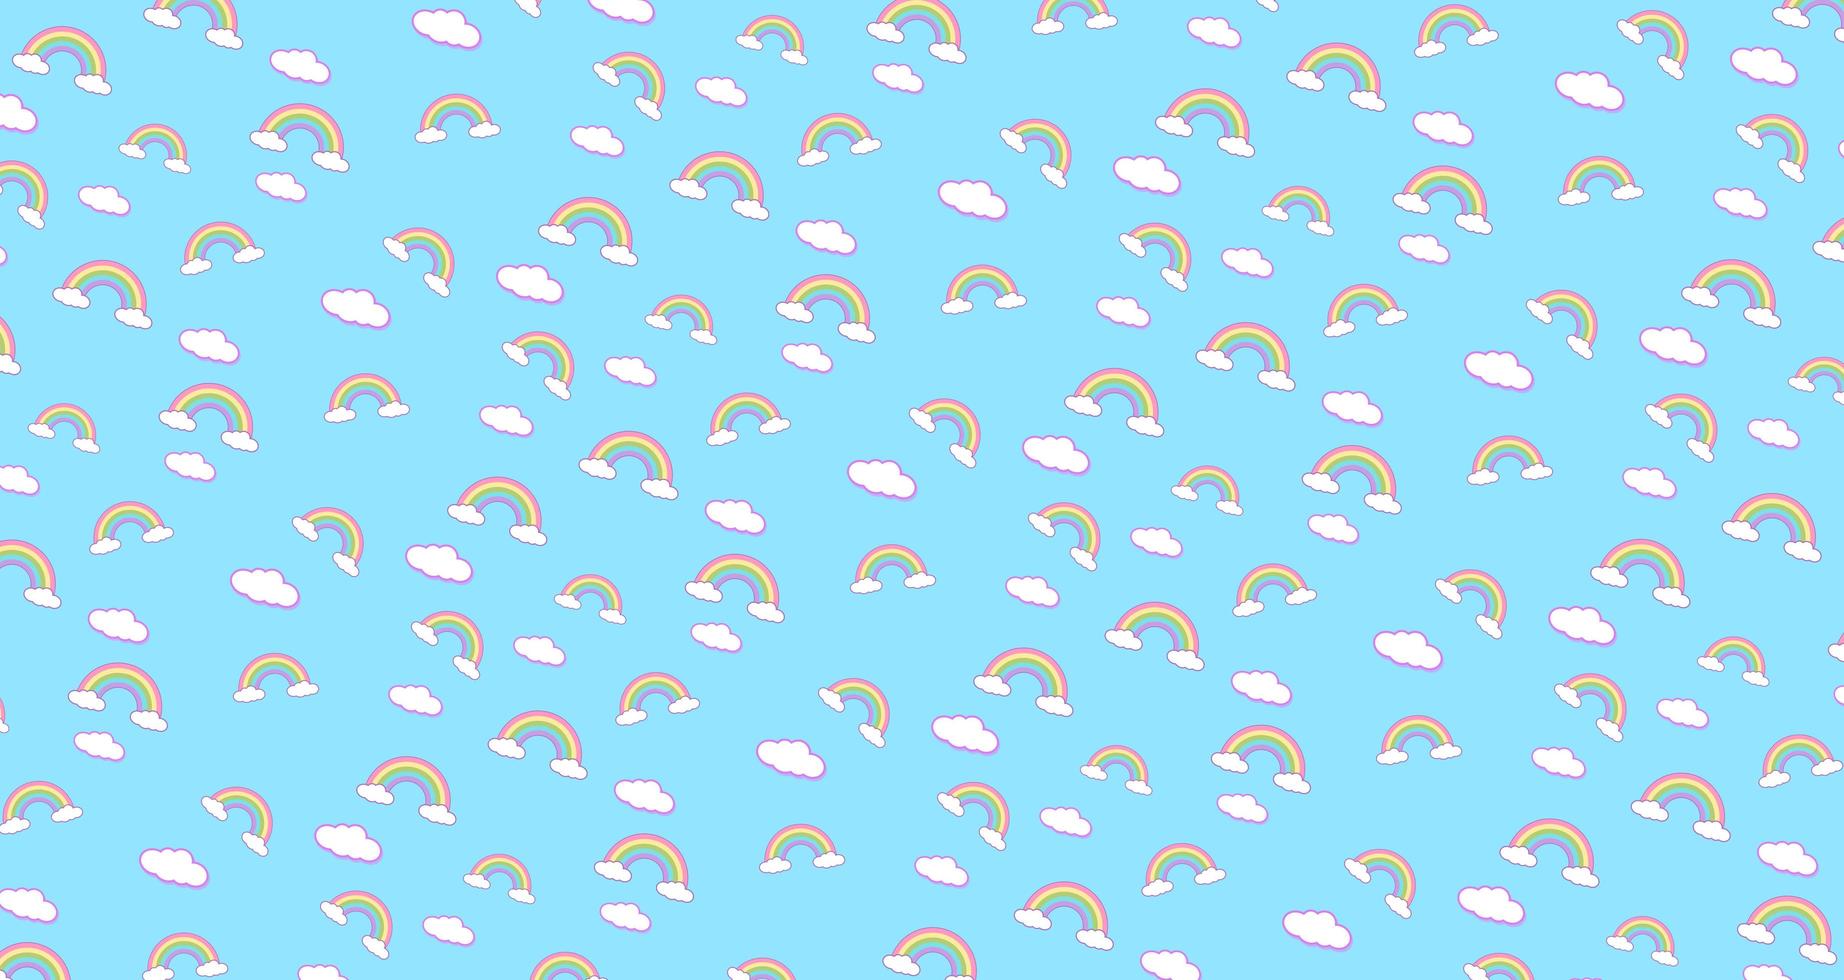 patrón abstracto arco iris y nubes fondo de papel tapiz kawaii. dibujos animados de caras divertidas de colores pastel lindos abstractos. concepto para niños y jardines de infancia o presentación y día de navidad foto